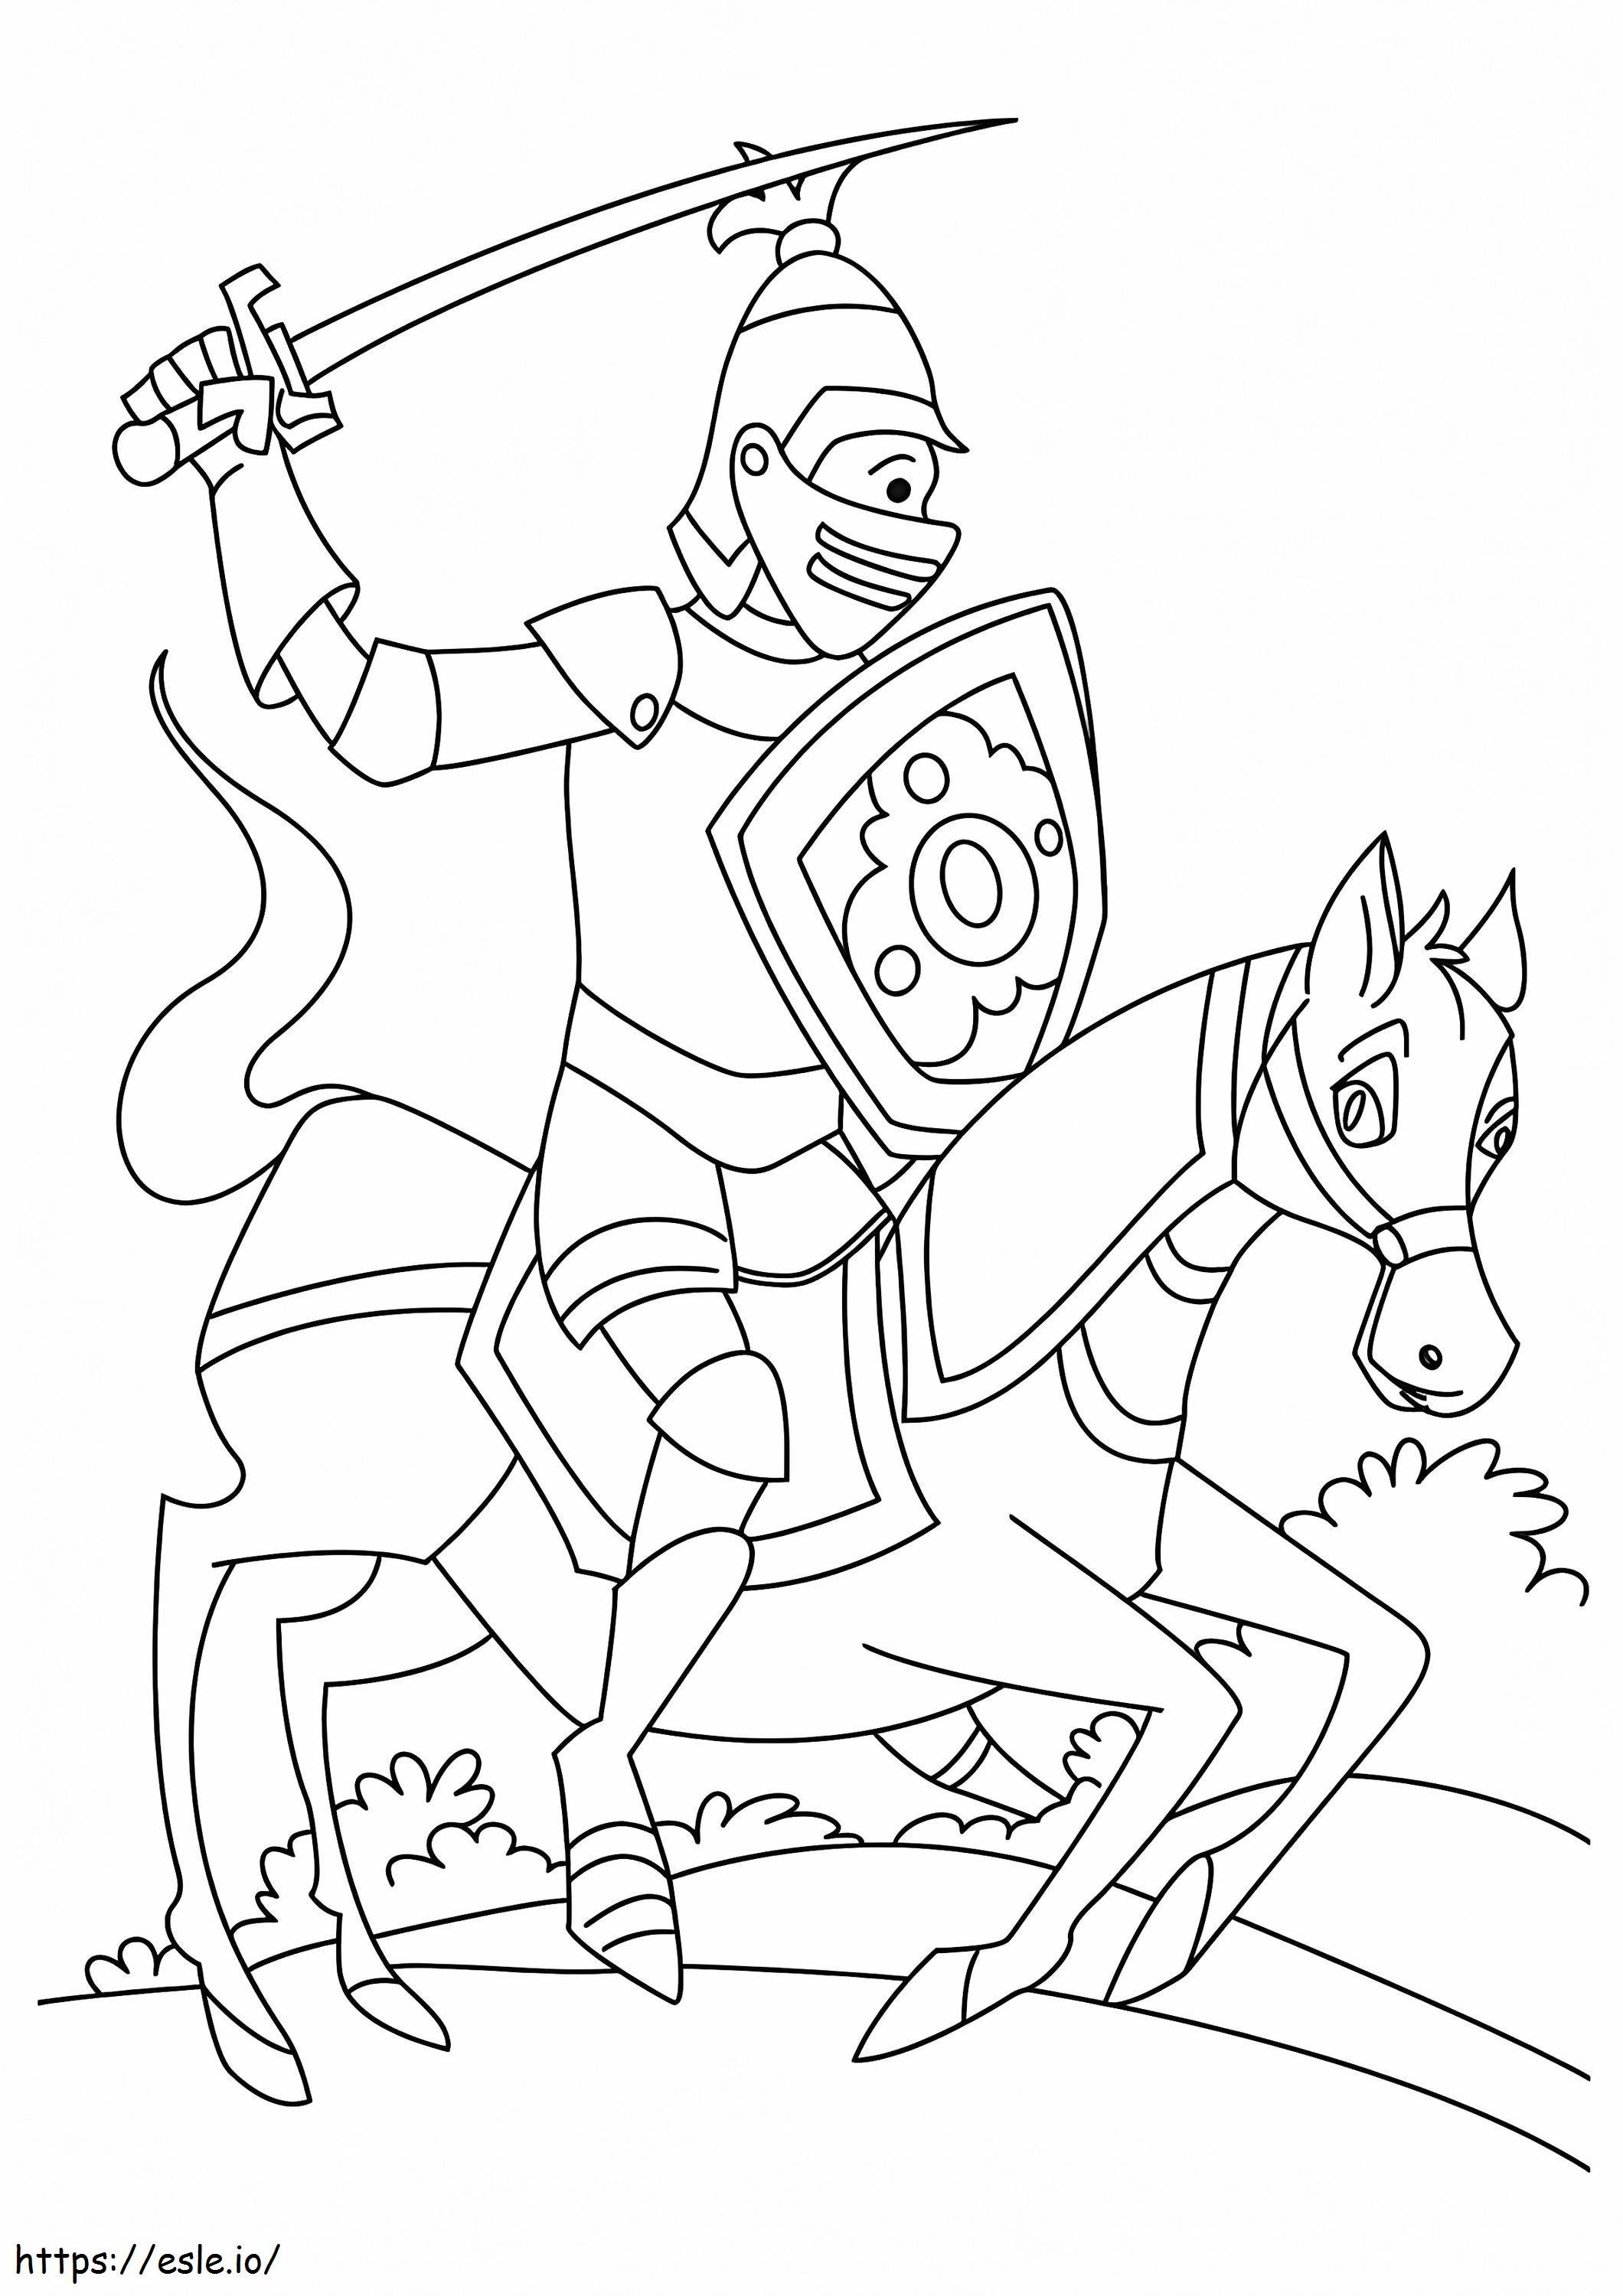 Coloriage 1526721447 Chevalier sur un cheval A4 à imprimer dessin